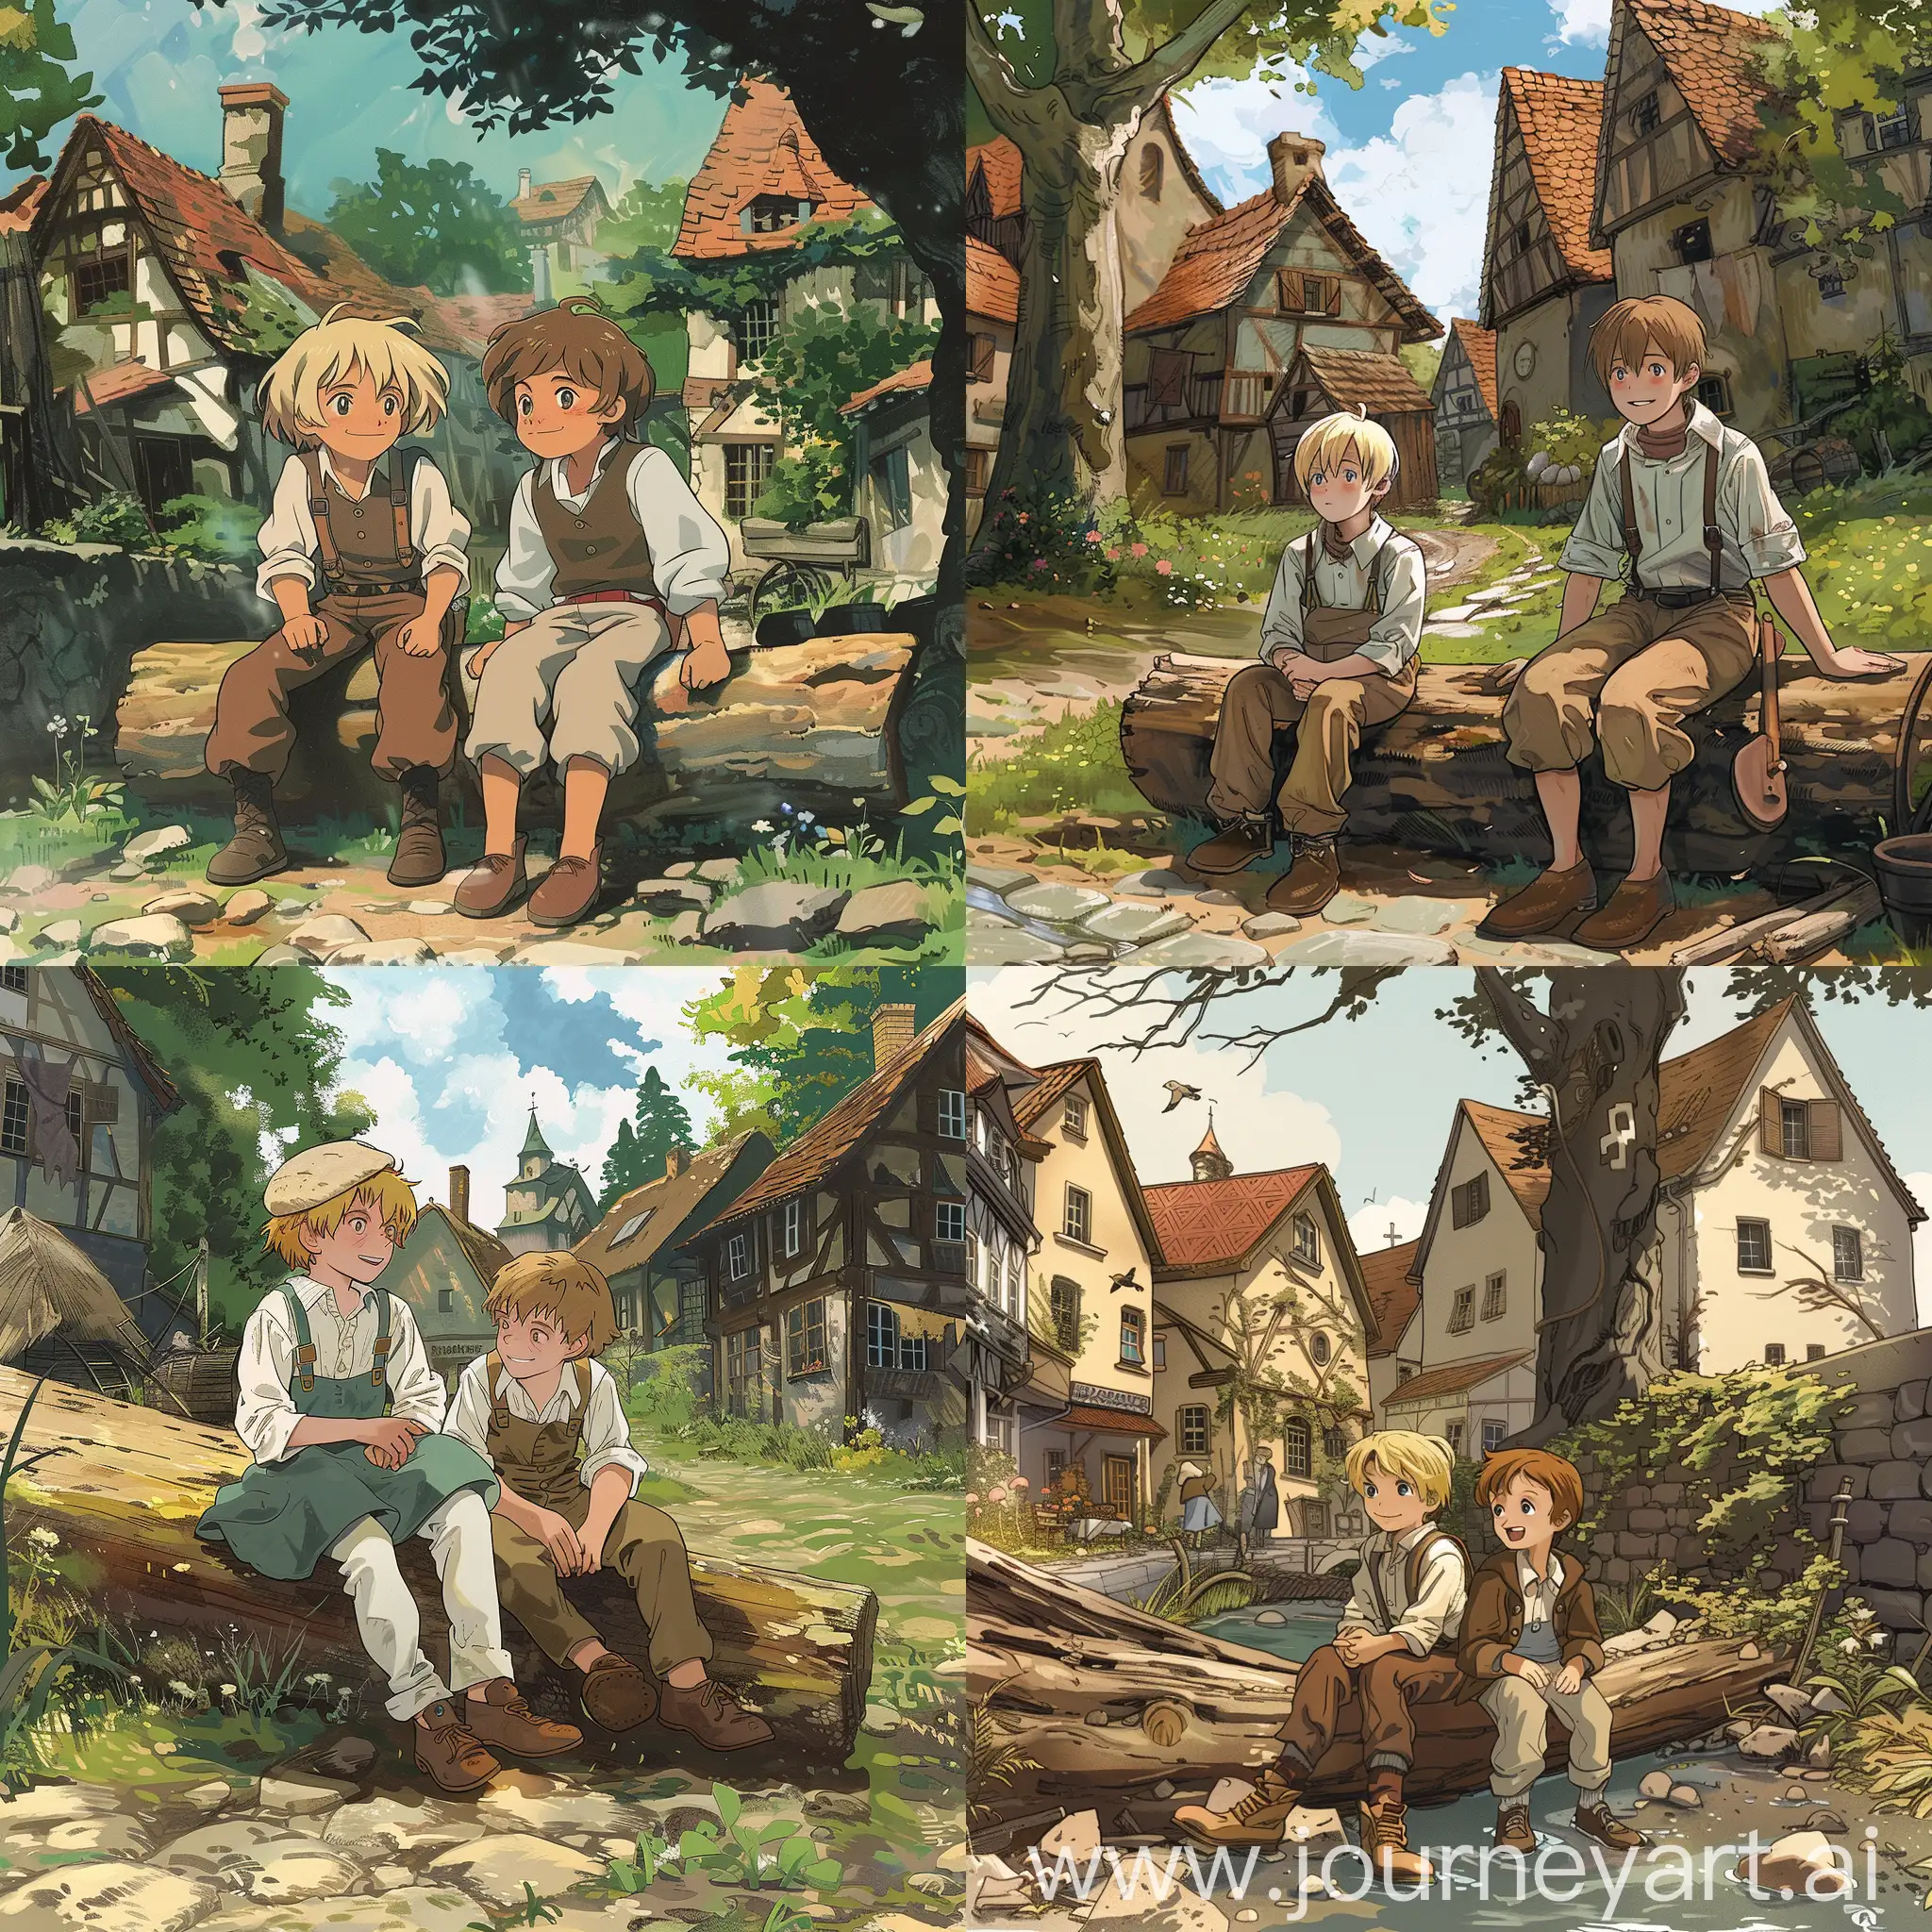 Boys-on-Log-in-1800s-German-Village-Ghibli-Anime-Scene